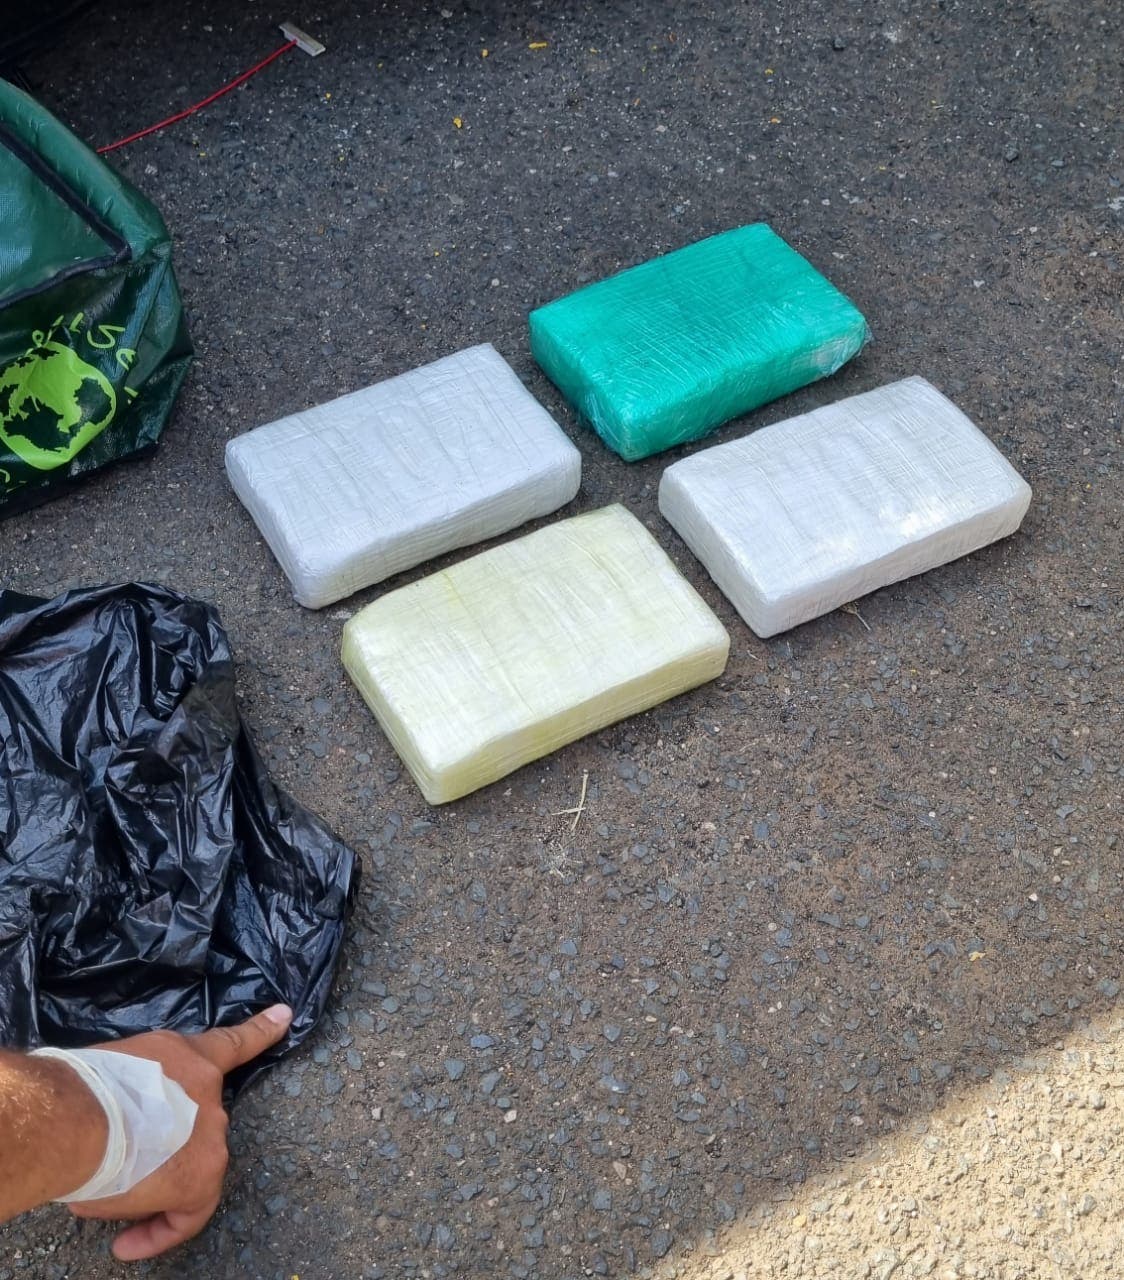 DNCD ocupa 4 paquetes de cocaína y apresa dos mujeres «mulas» servían al «Chino»